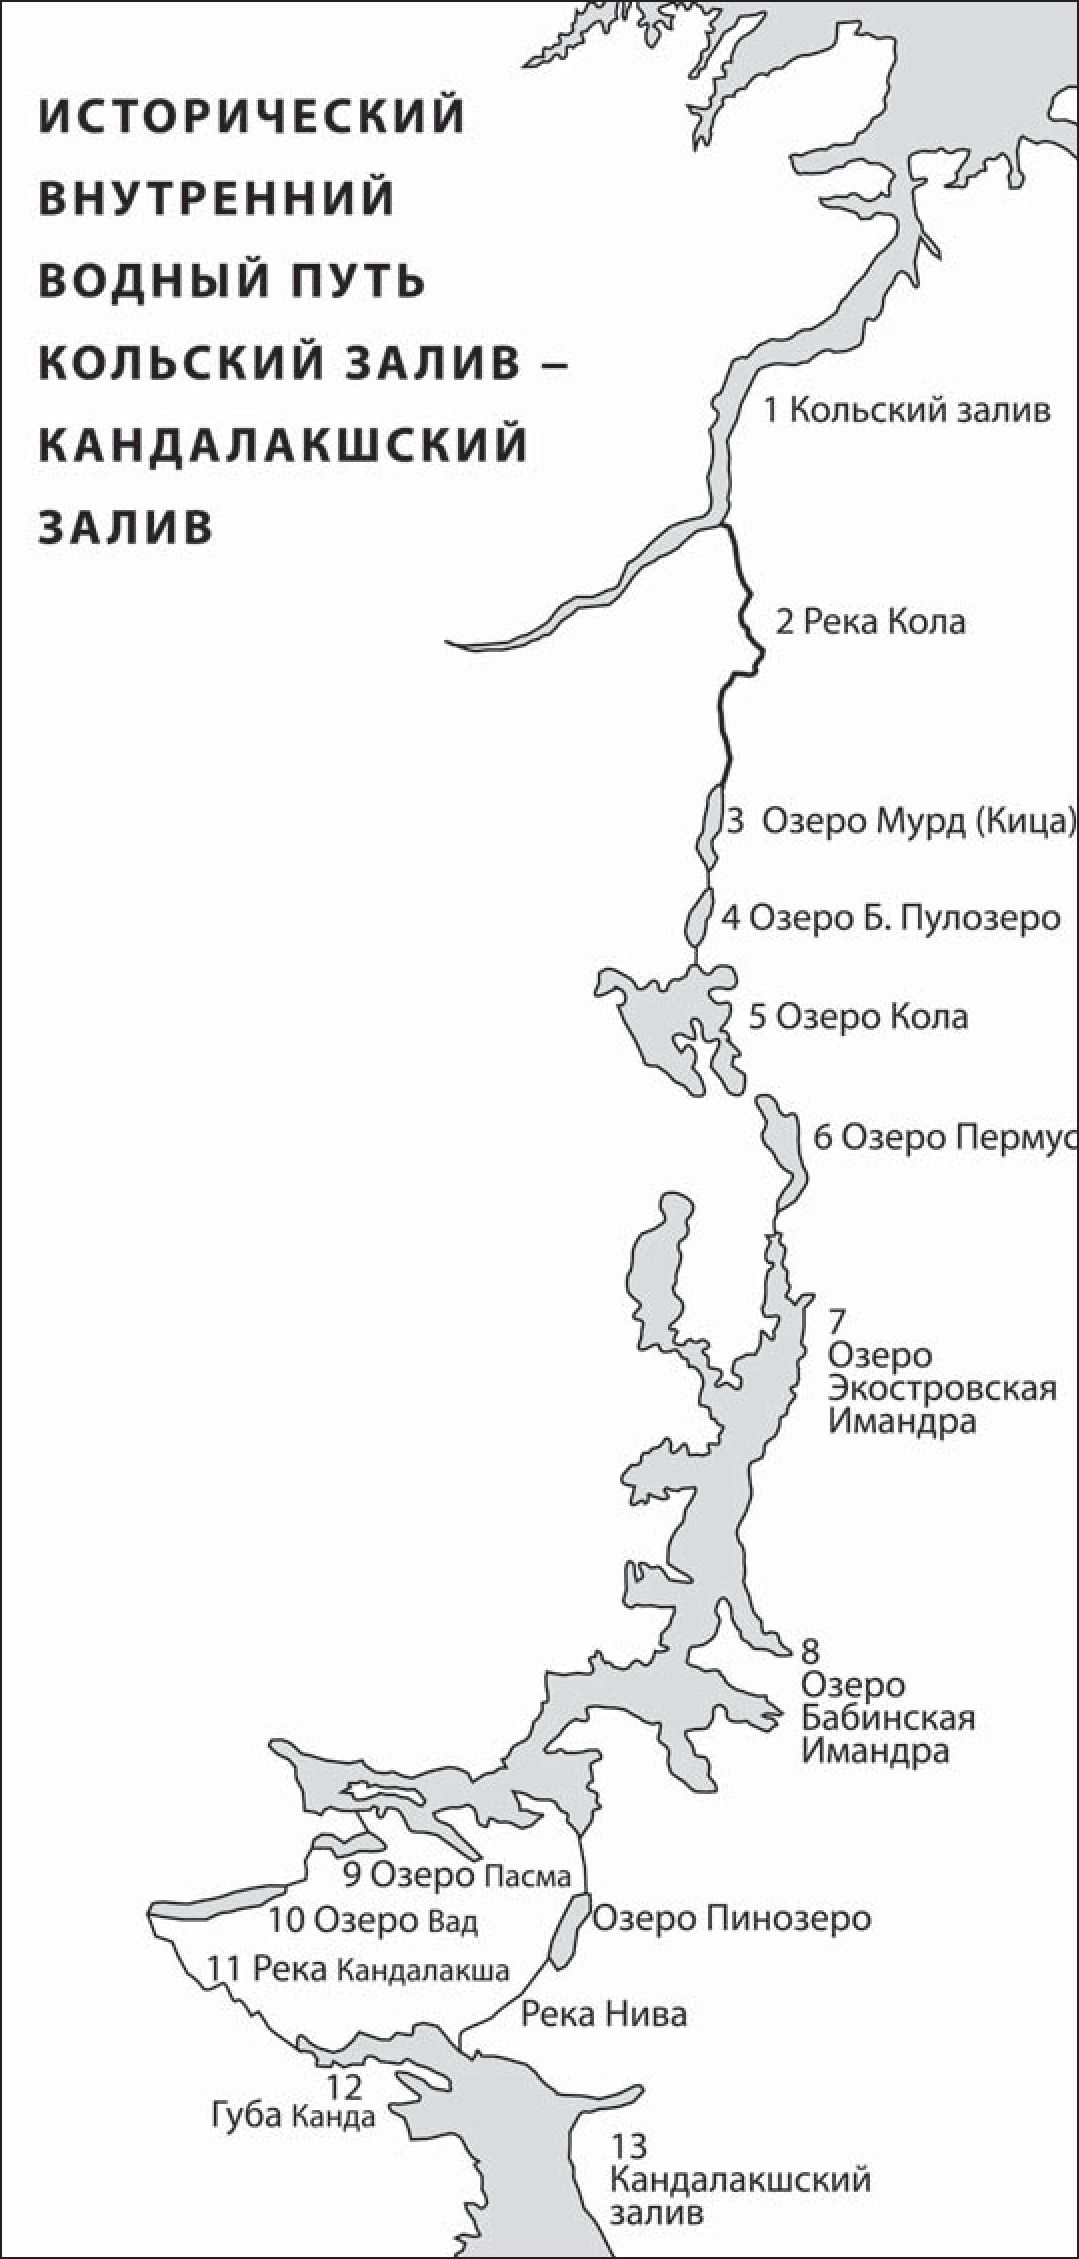 Исторический внутренний водный путь Кольский залив — Кандалакшский залив